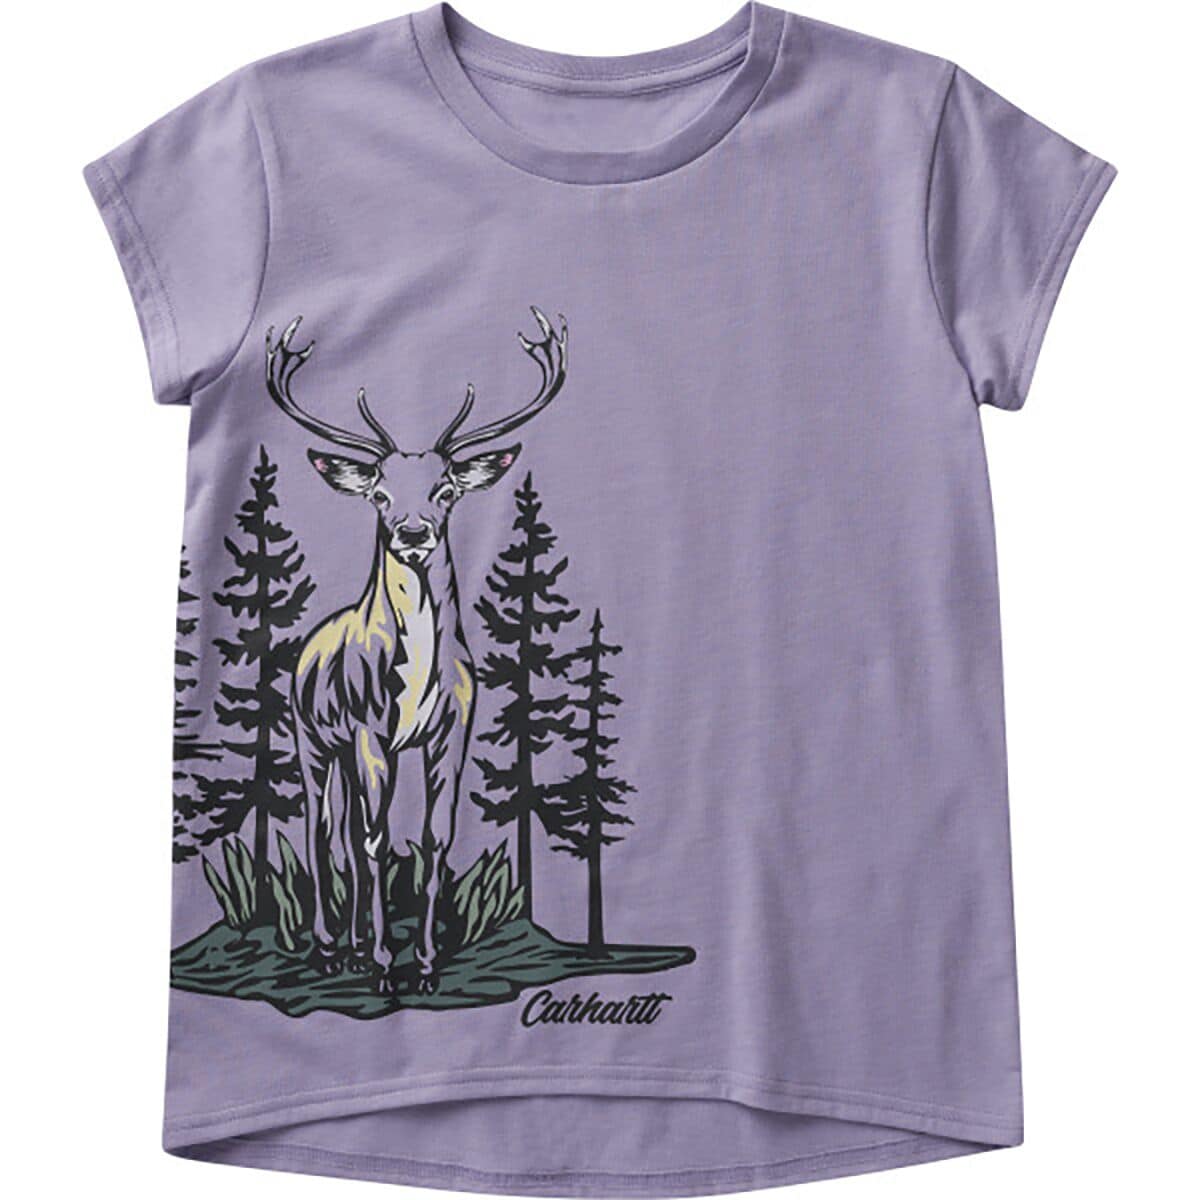 Carhartt Wilderness Deer SS Graphic T-Shirt - Toddler Girls'